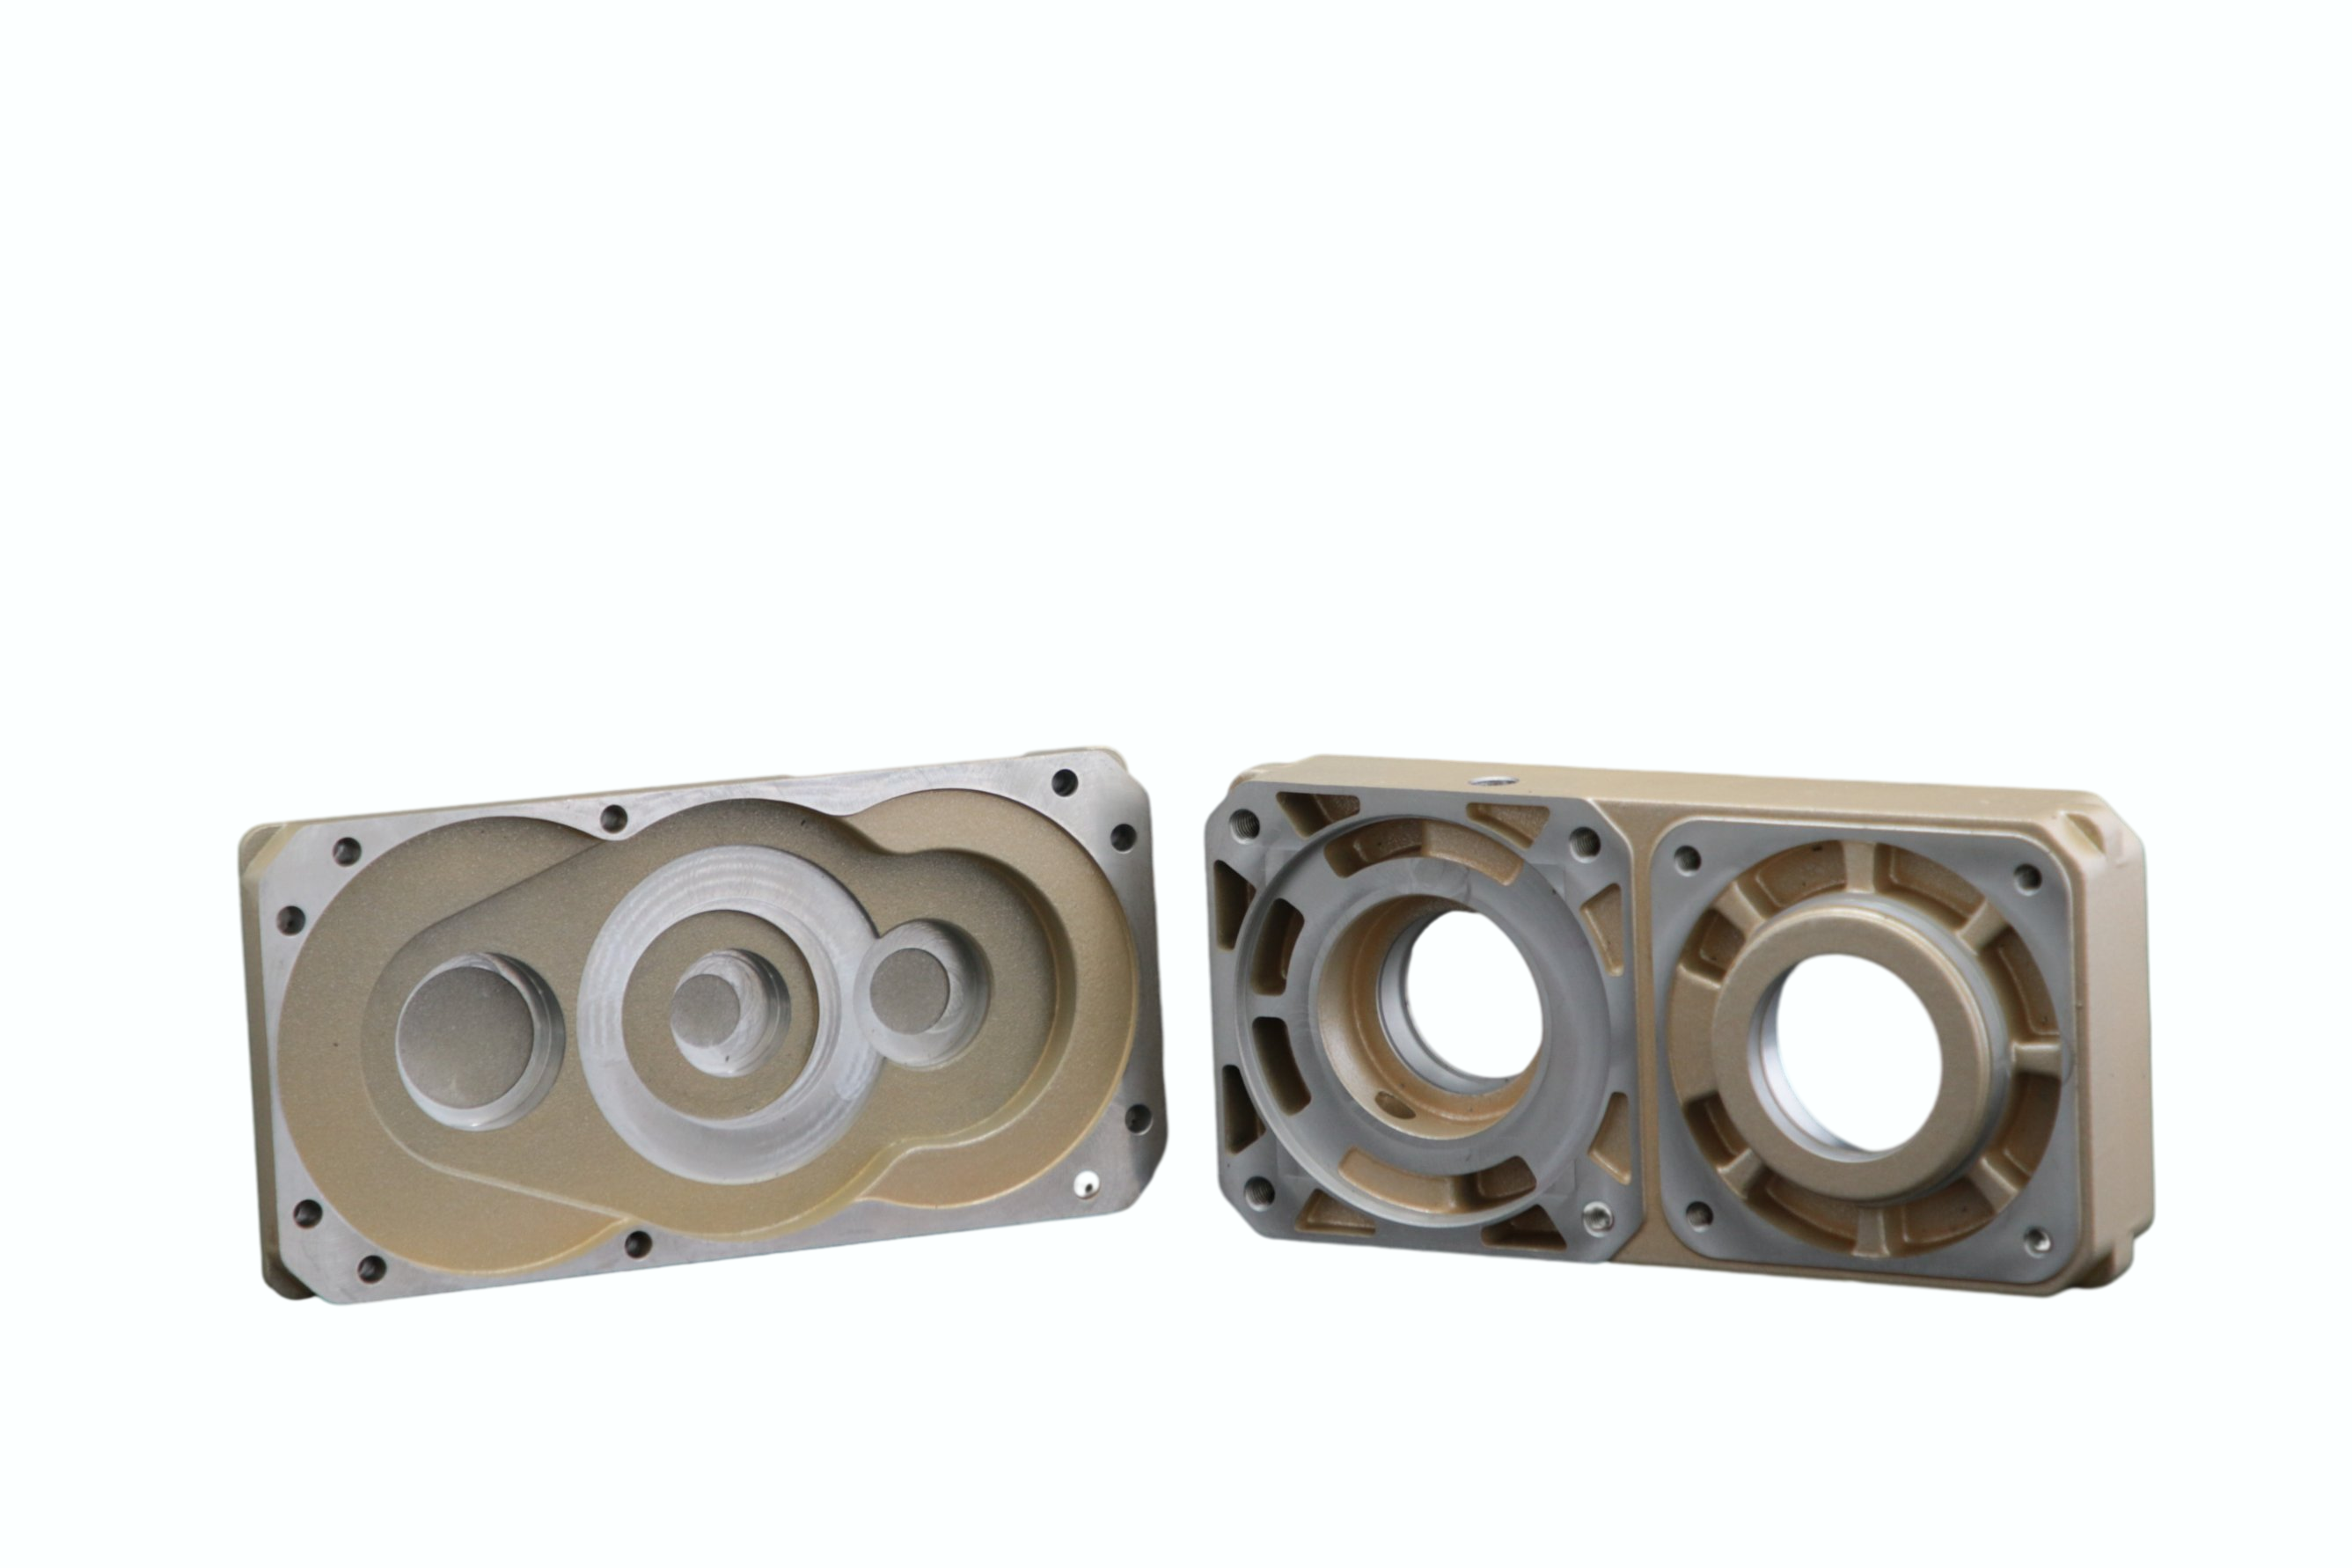 Aluminio a medida CNC fundición a presión aluminio Mecanizado de alta precisión aleación de aluminio Piezas